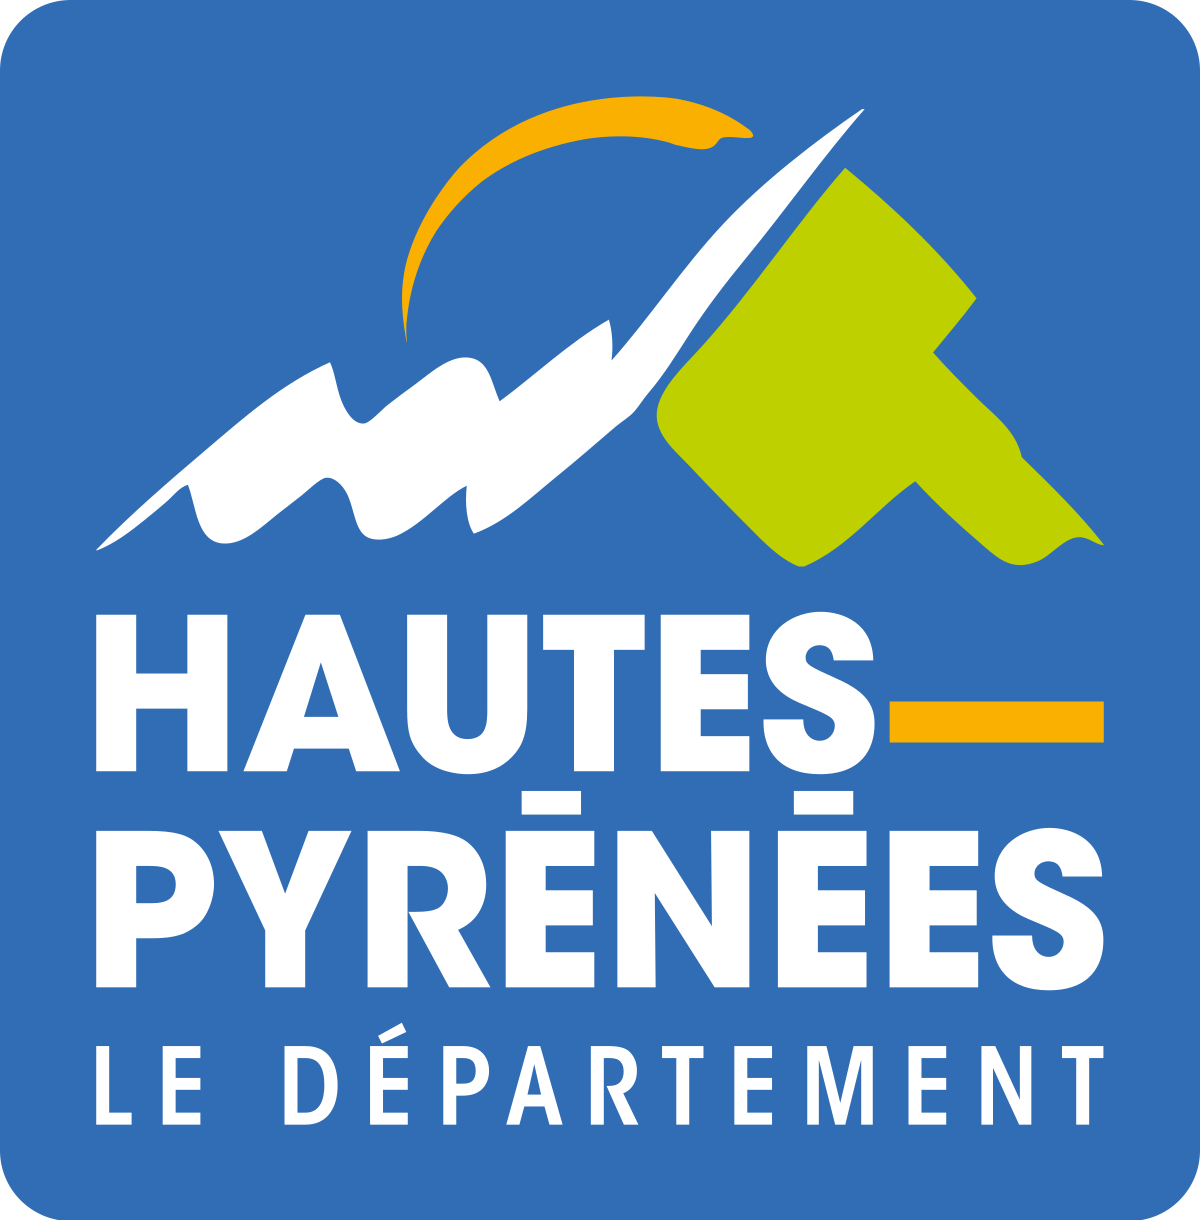 Hautes-Pyrénées Le département